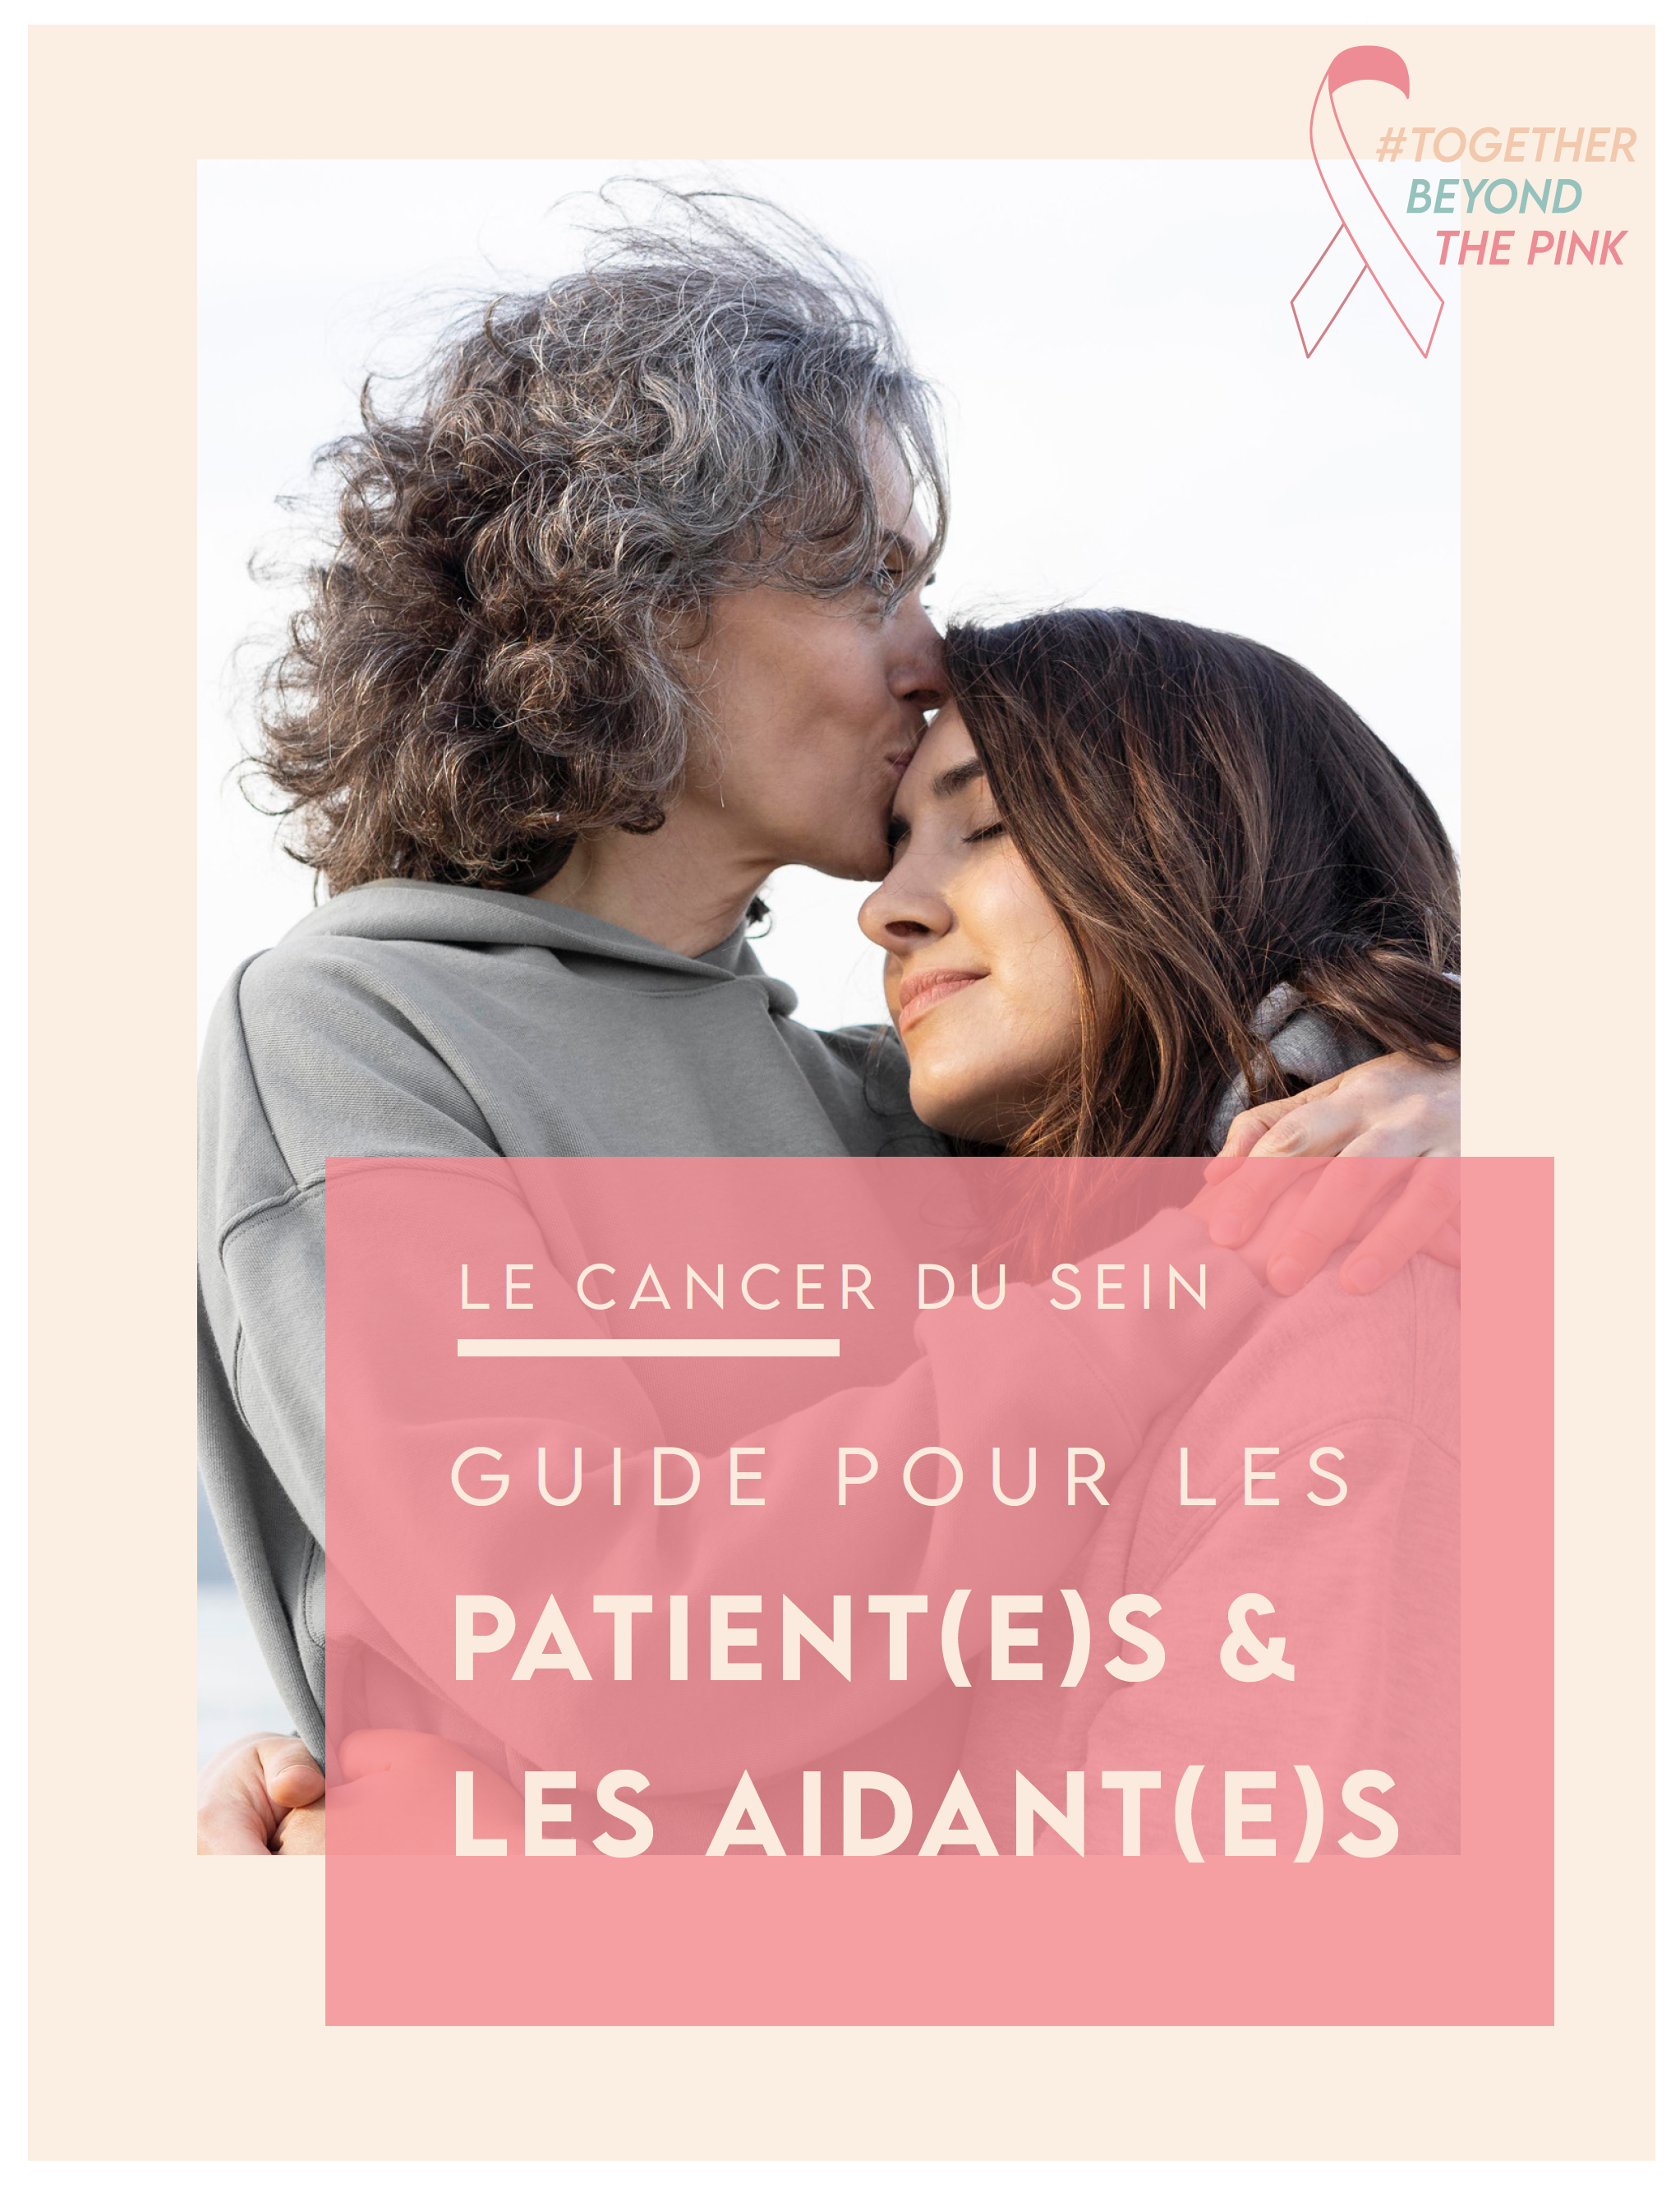 Le cancer du sein - Guide pour les patient(e)s & aidant(e)s